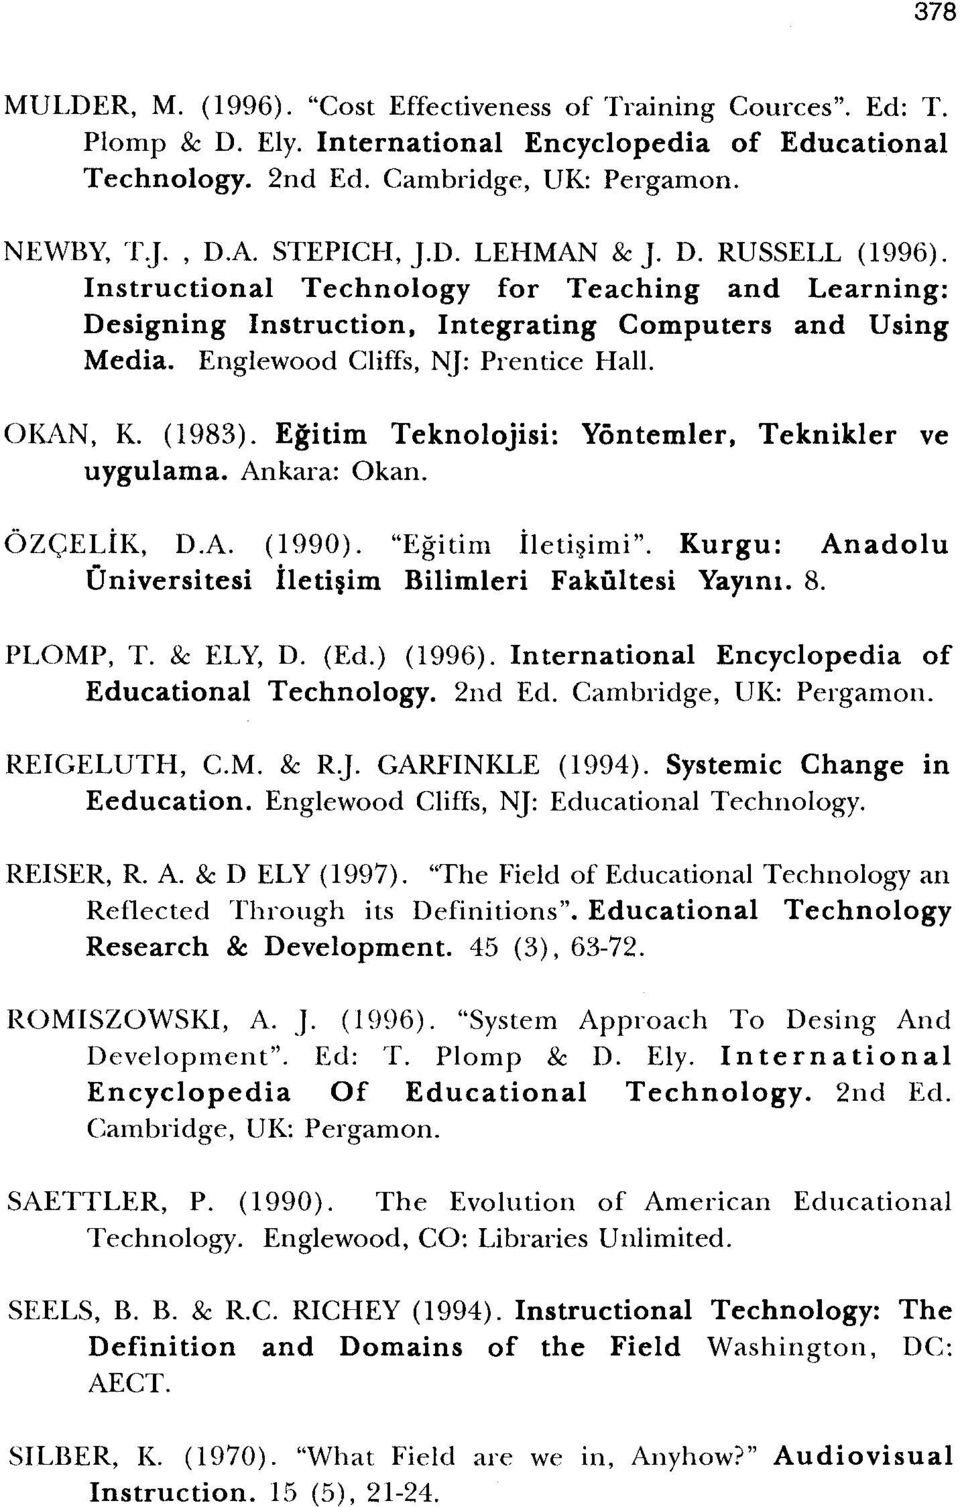 OI\AN, K. (1983). Egitim Teknolojisi: Yontemler, Teknikler ve uygulama. Ankara: Okano 6ZGELiK, D.A. (1990). "Egitim Iletisirni". Kurgu: Anadolu Oniversitesi Iletisim Bilimleri Fakultesi Yayiru. 8.